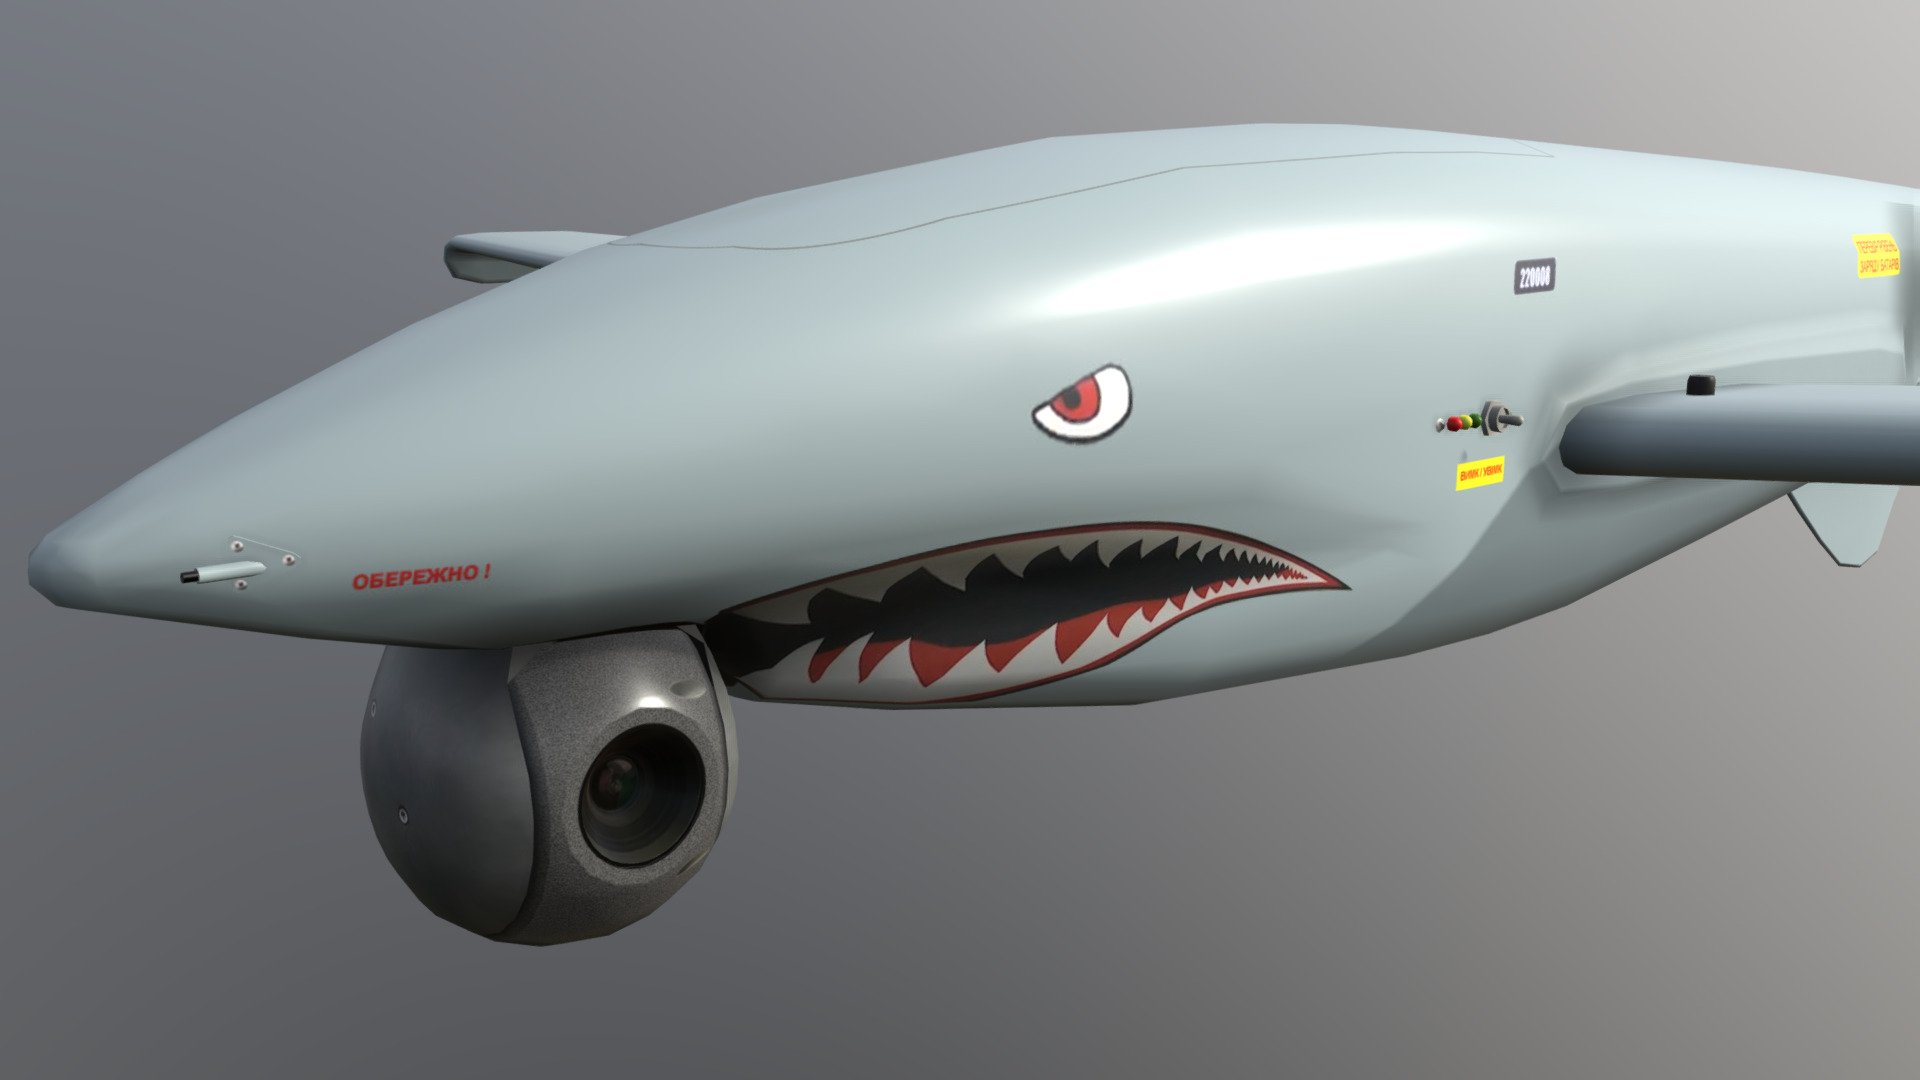 https://www.youtube.com/watch?v=hHpqyEFEe1I - SHARK UAV  Ukrspecsystem - Download Free 3D model by paperscan 3d model